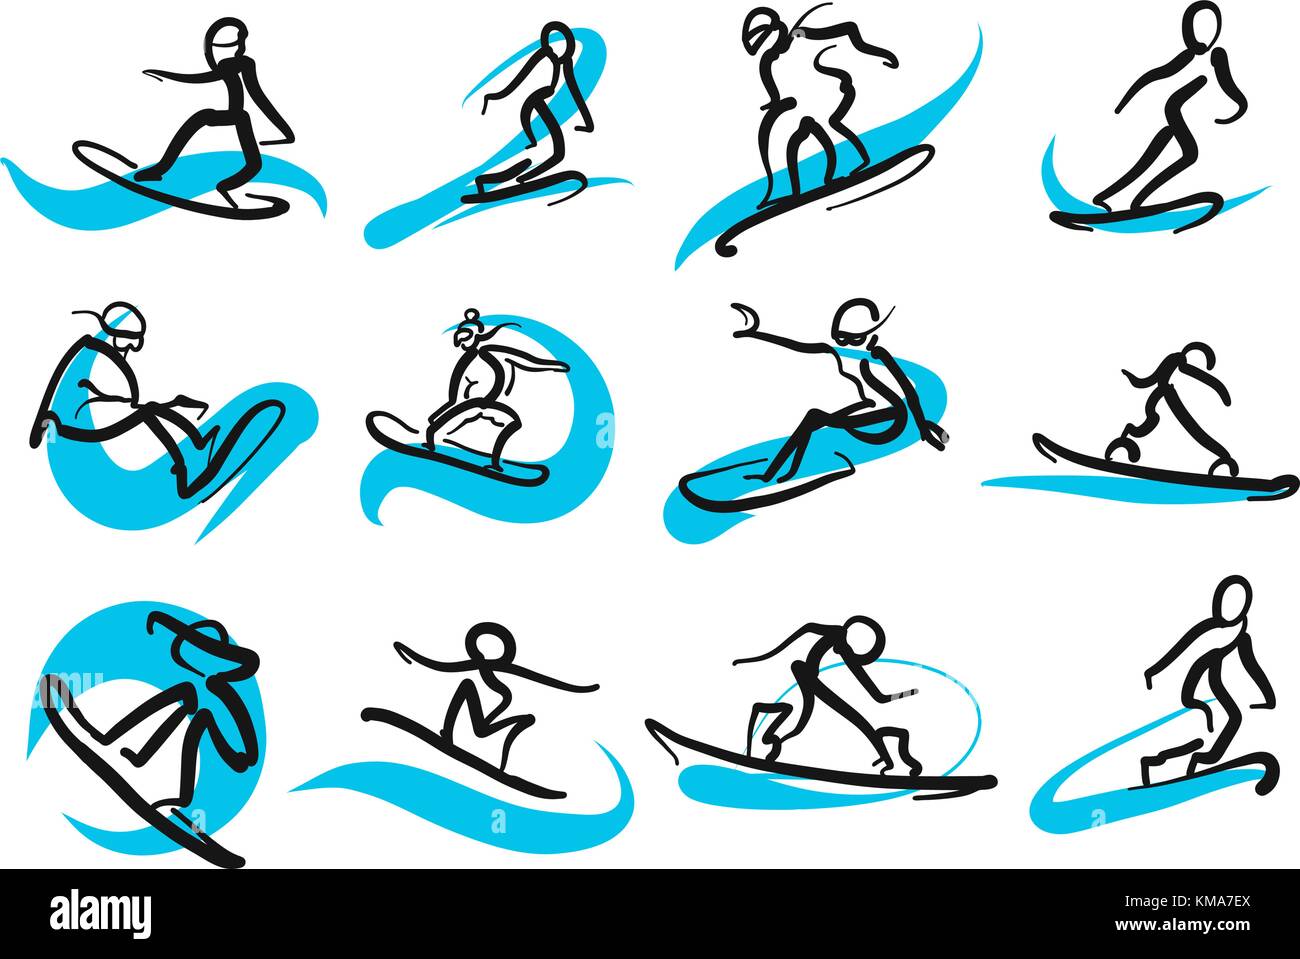 Set di abbozzato freestyle snowboard persone, disegnati a mano illustrazione vettoriale da due diverse penne. La popolazione nera in primo piano, blu spostamento delle linee in Illustrazione Vettoriale